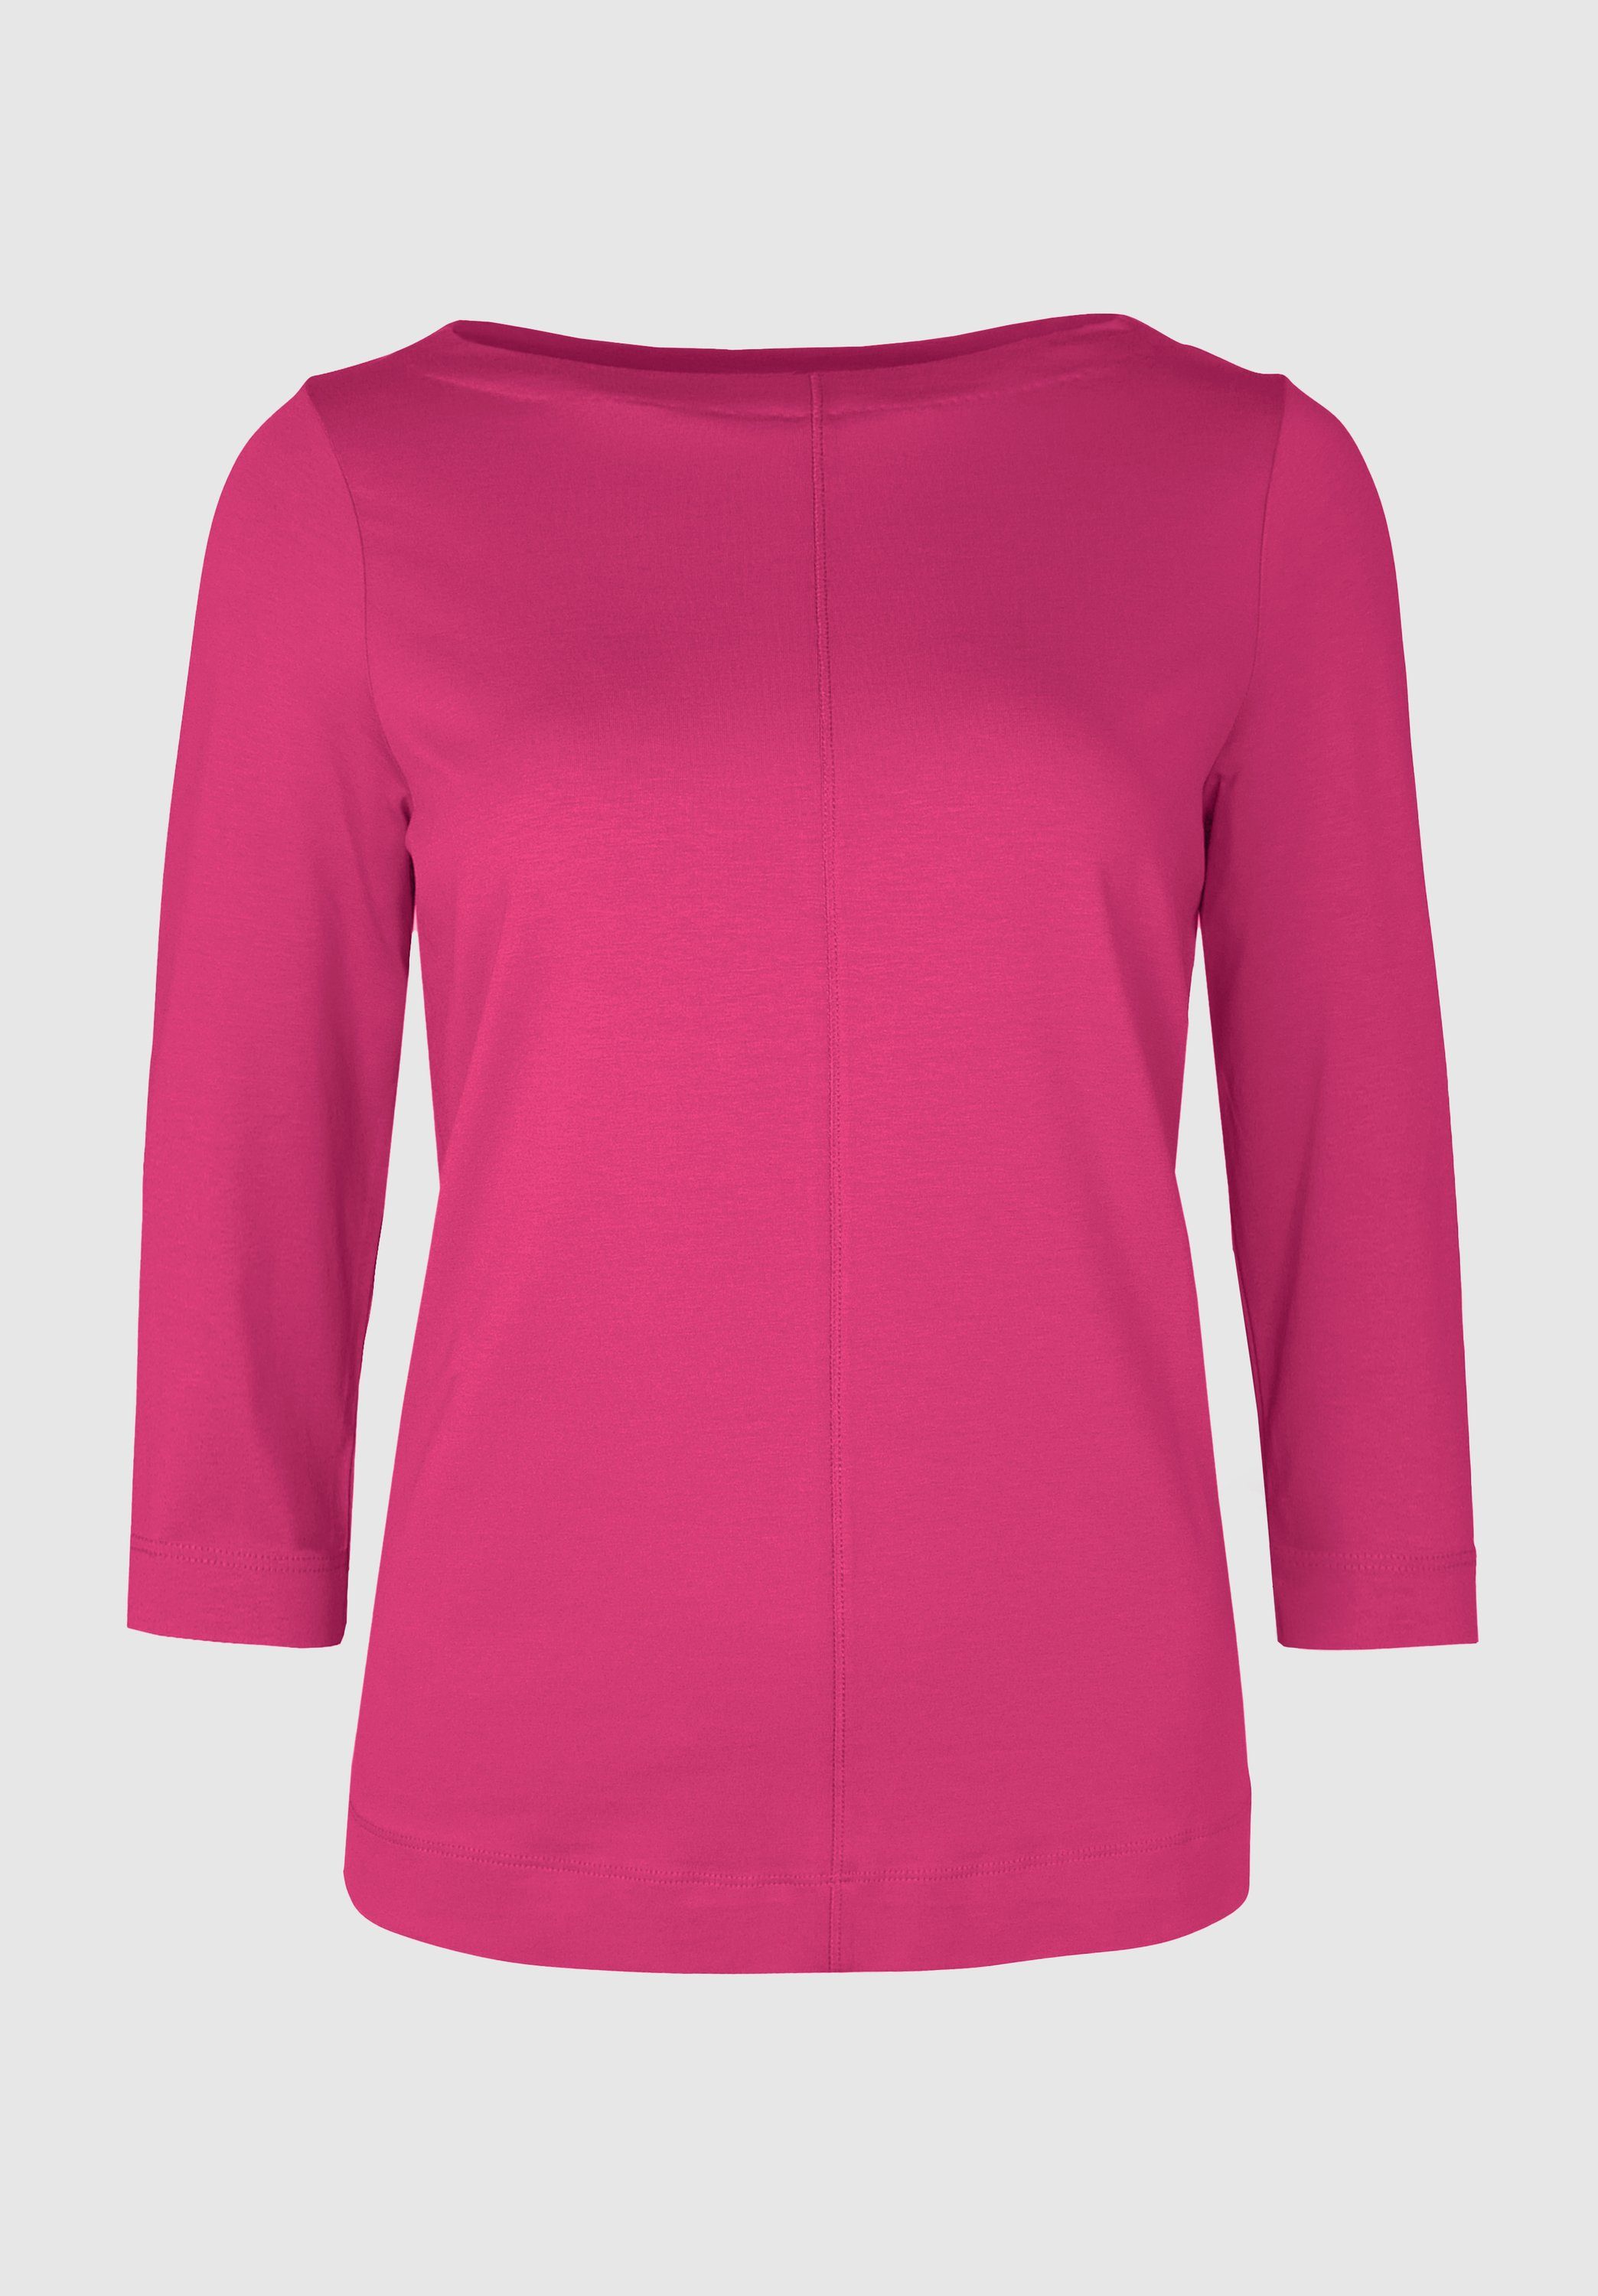 bianca 3/4-Arm-Shirt DIELLA in modernem Look und angesagten Trendfarben cool pink